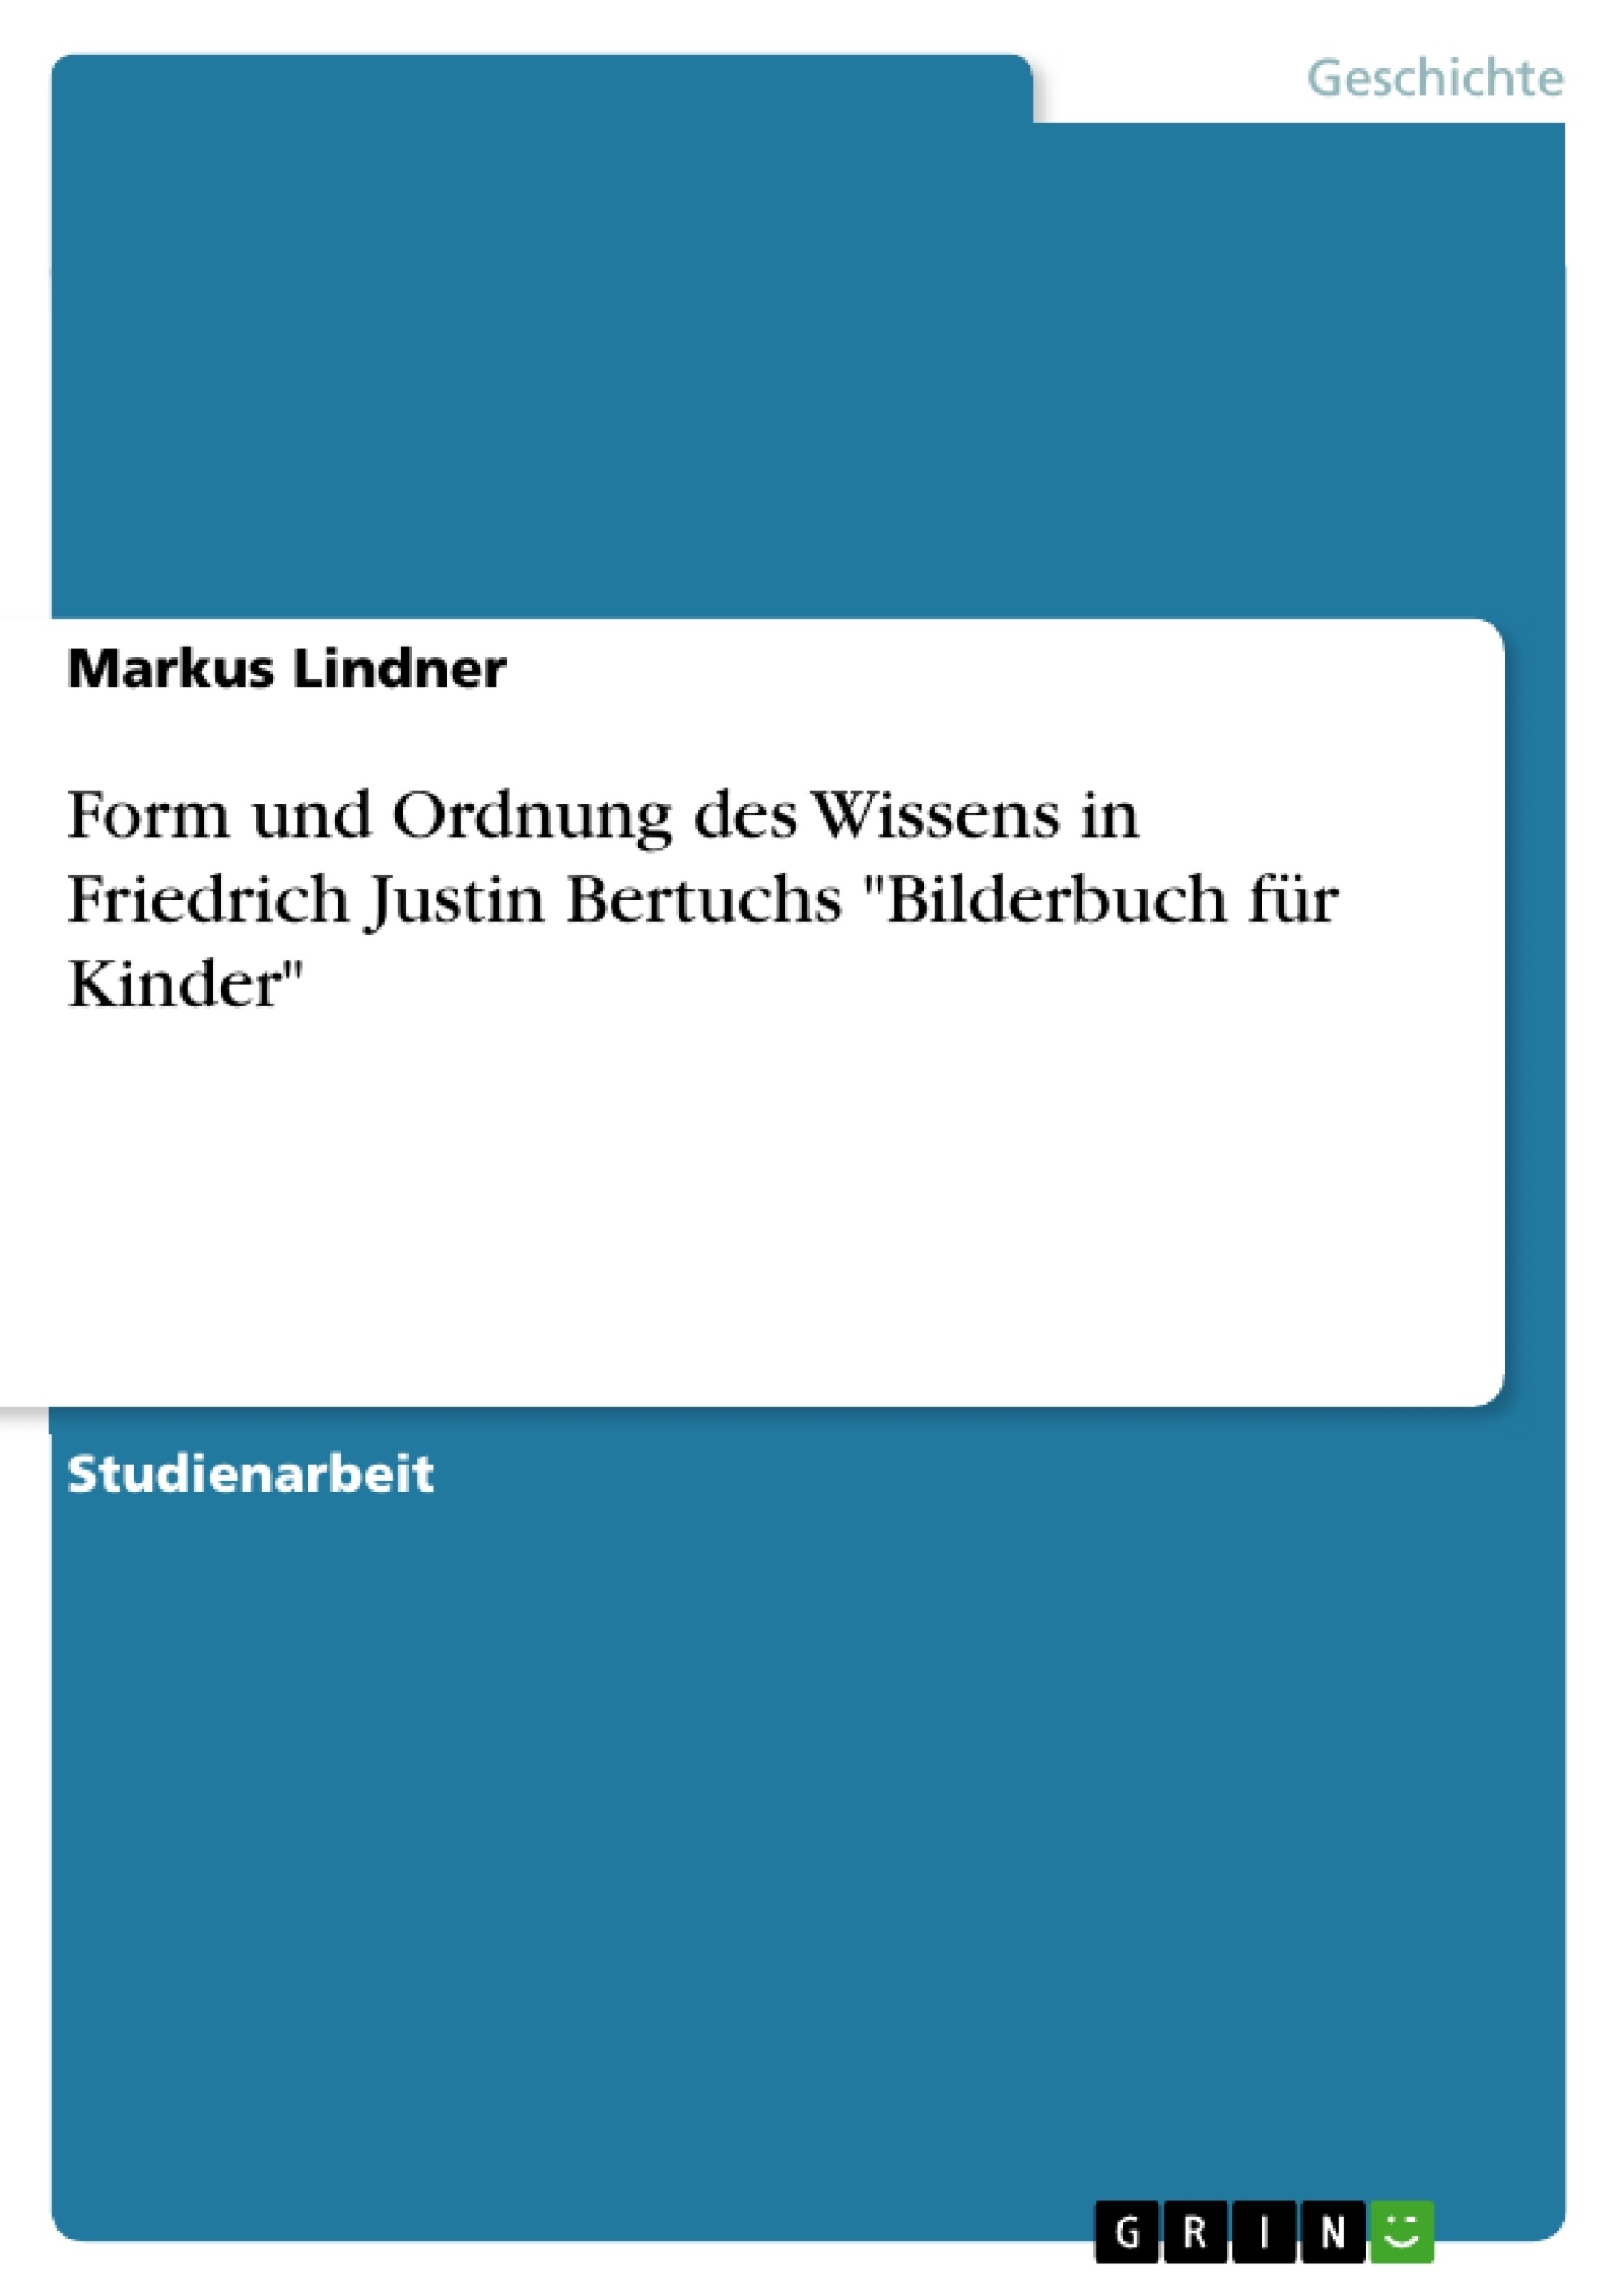 Título: Form und Ordnung des Wissens in Friedrich Justin Bertuchs "Bilderbuch für Kinder"